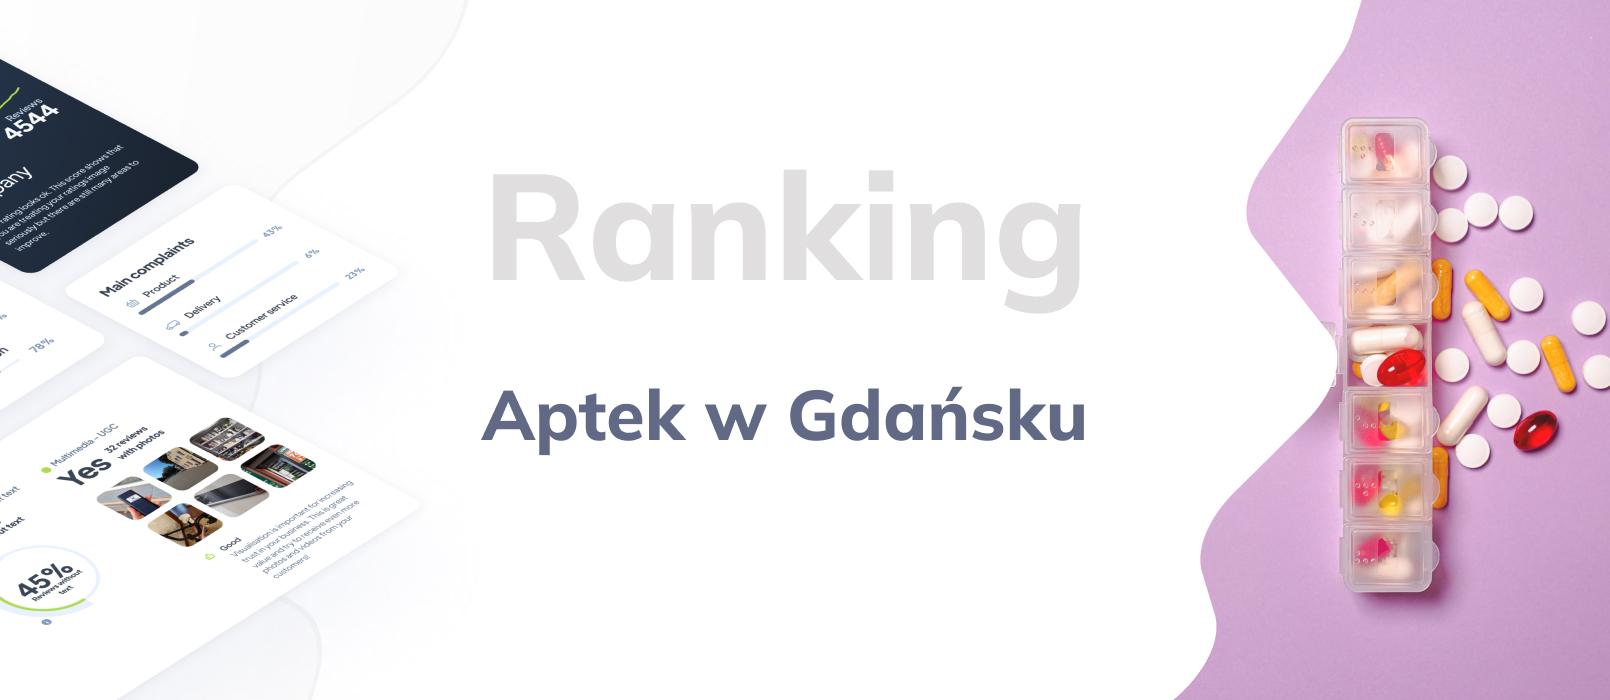 Apteki w Gdańsku - ranking TOP 10